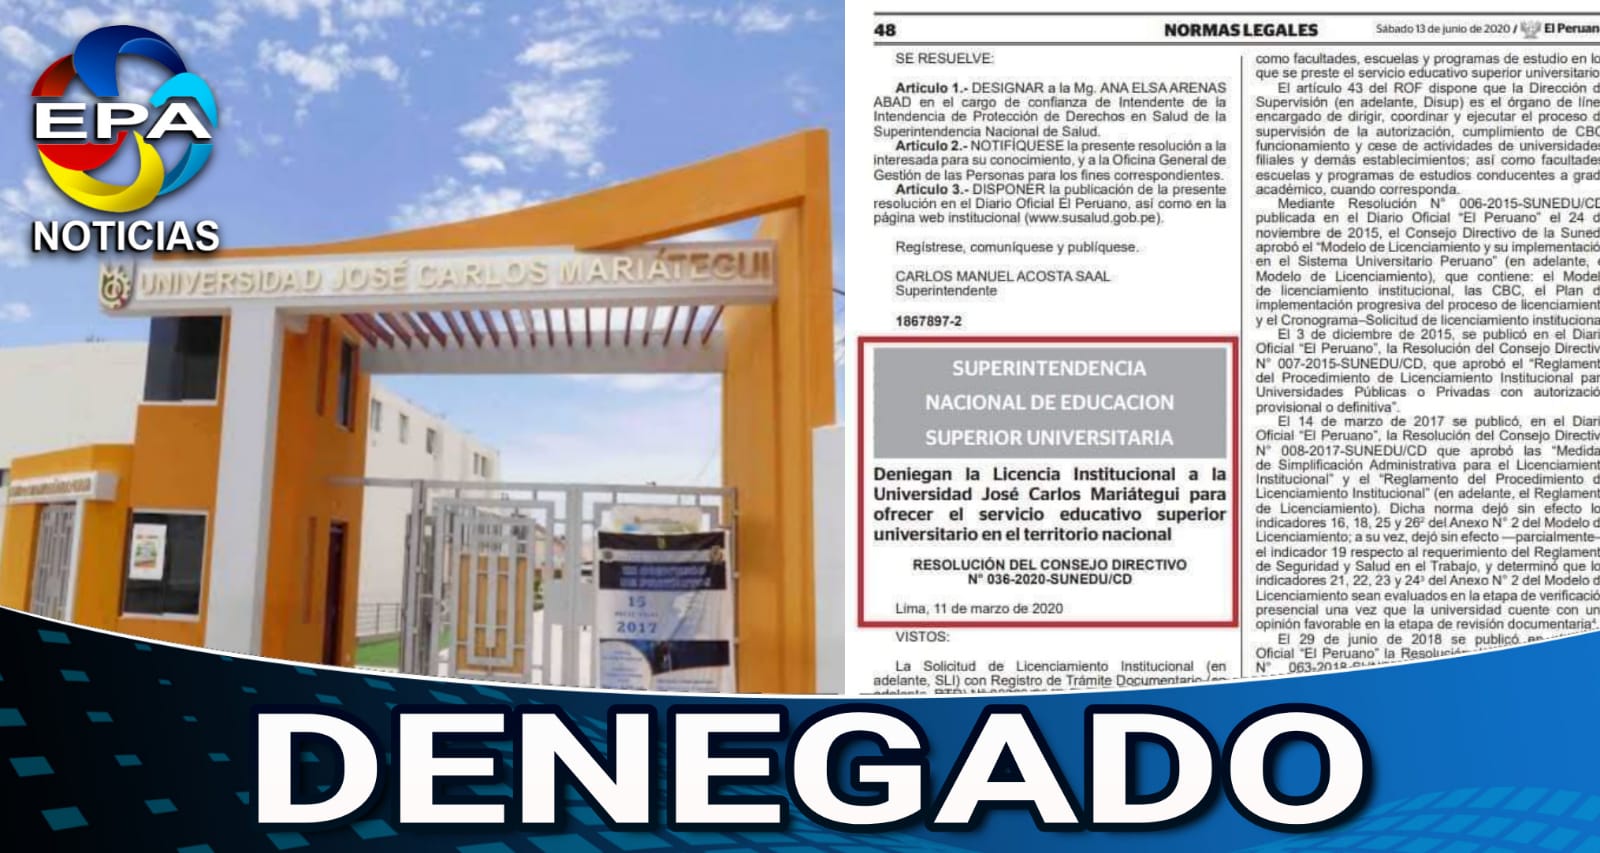 Moquegua. Deniegan licenciamiento institucional a la universidad José Carlos Mariátegui